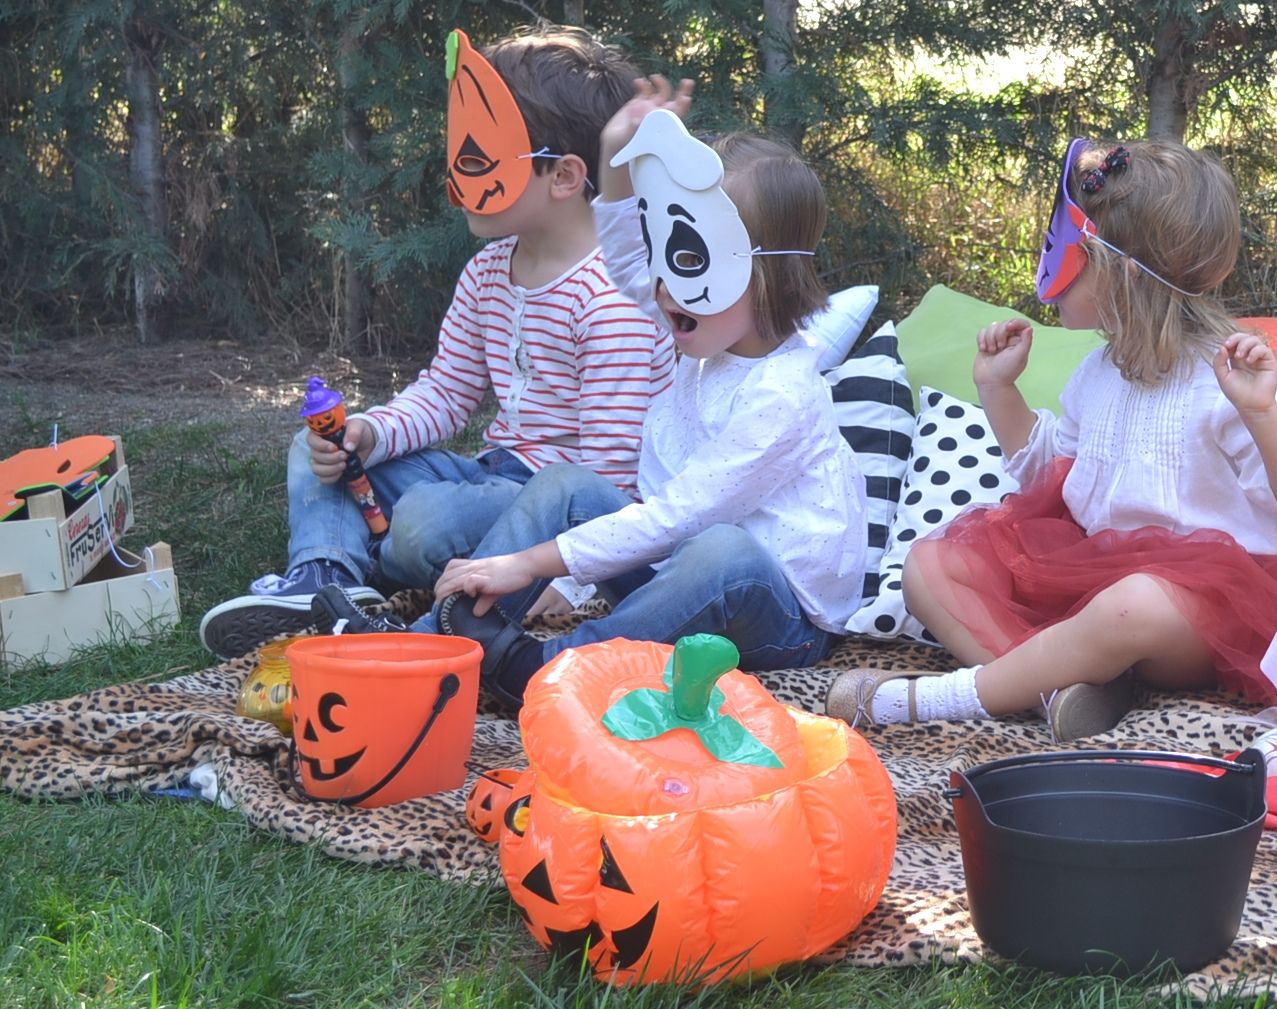  niños con caretas de halloween en fiesta en el parque